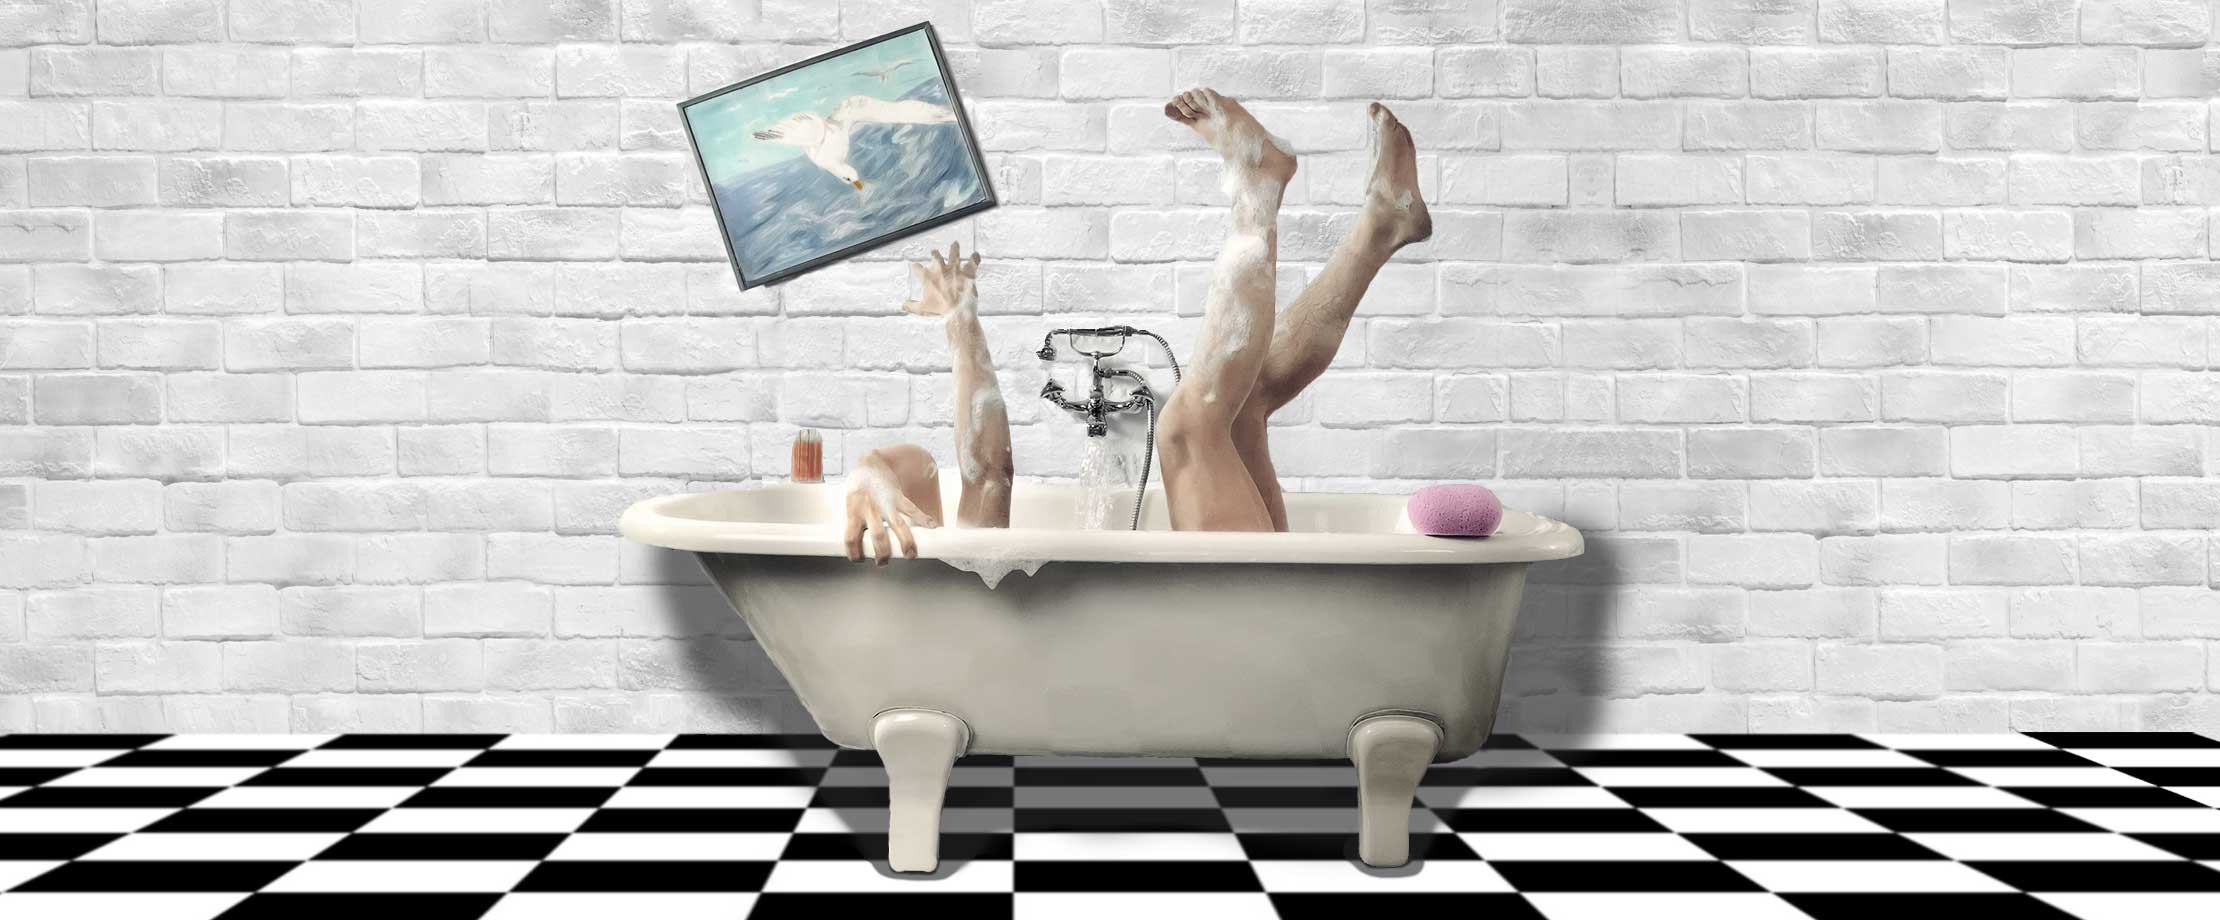 Eine Person liegt in der Badewanne. Die Beine sind nach oben hin ausgestreckt. Mit den Händen versucht die Person sich am Badewannenrand festzuhalten. Das verrutschte Bild an der Wand hinter der Badewanne, deutet auf einen Unfall hin.